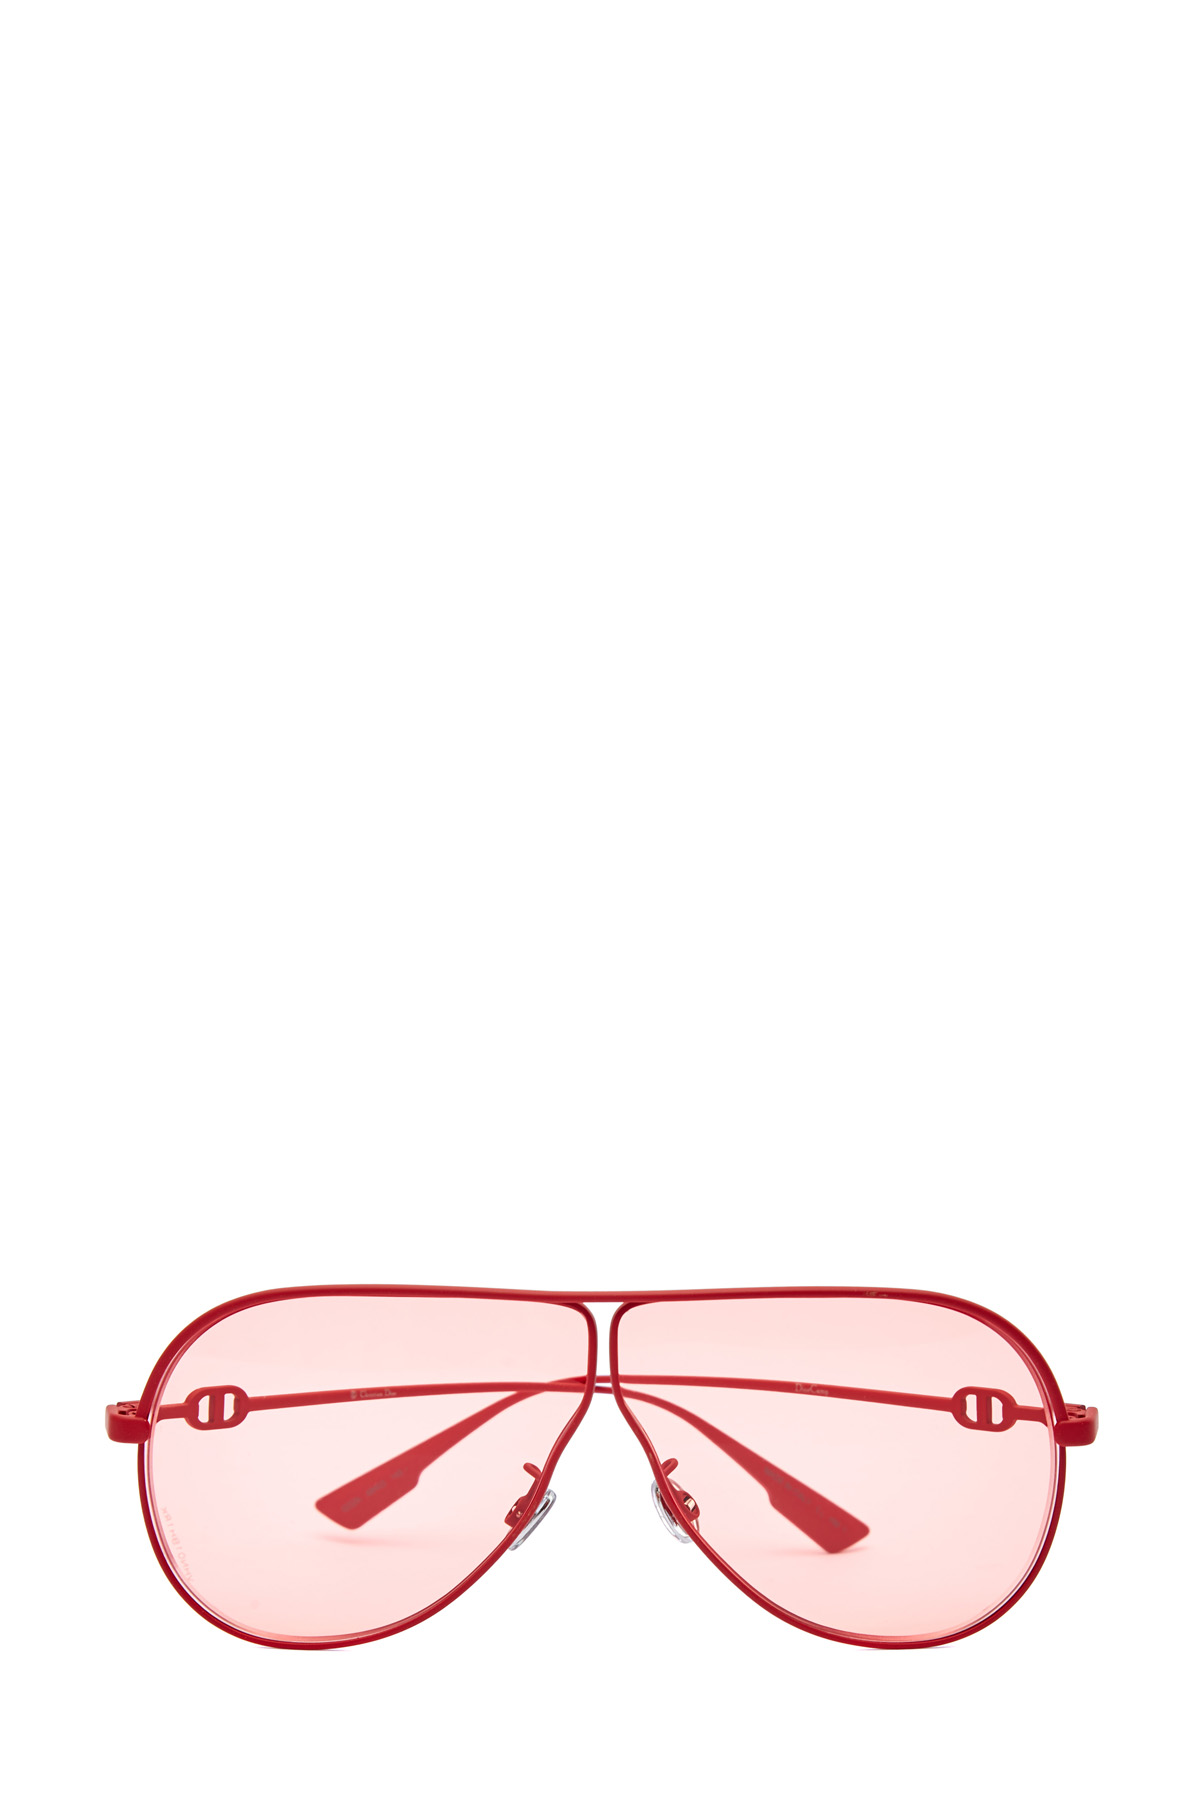 Очки-авиаторы в тонкой прорезиненной оправе DIOR (sunglasses) women, цвет красный, размер XL